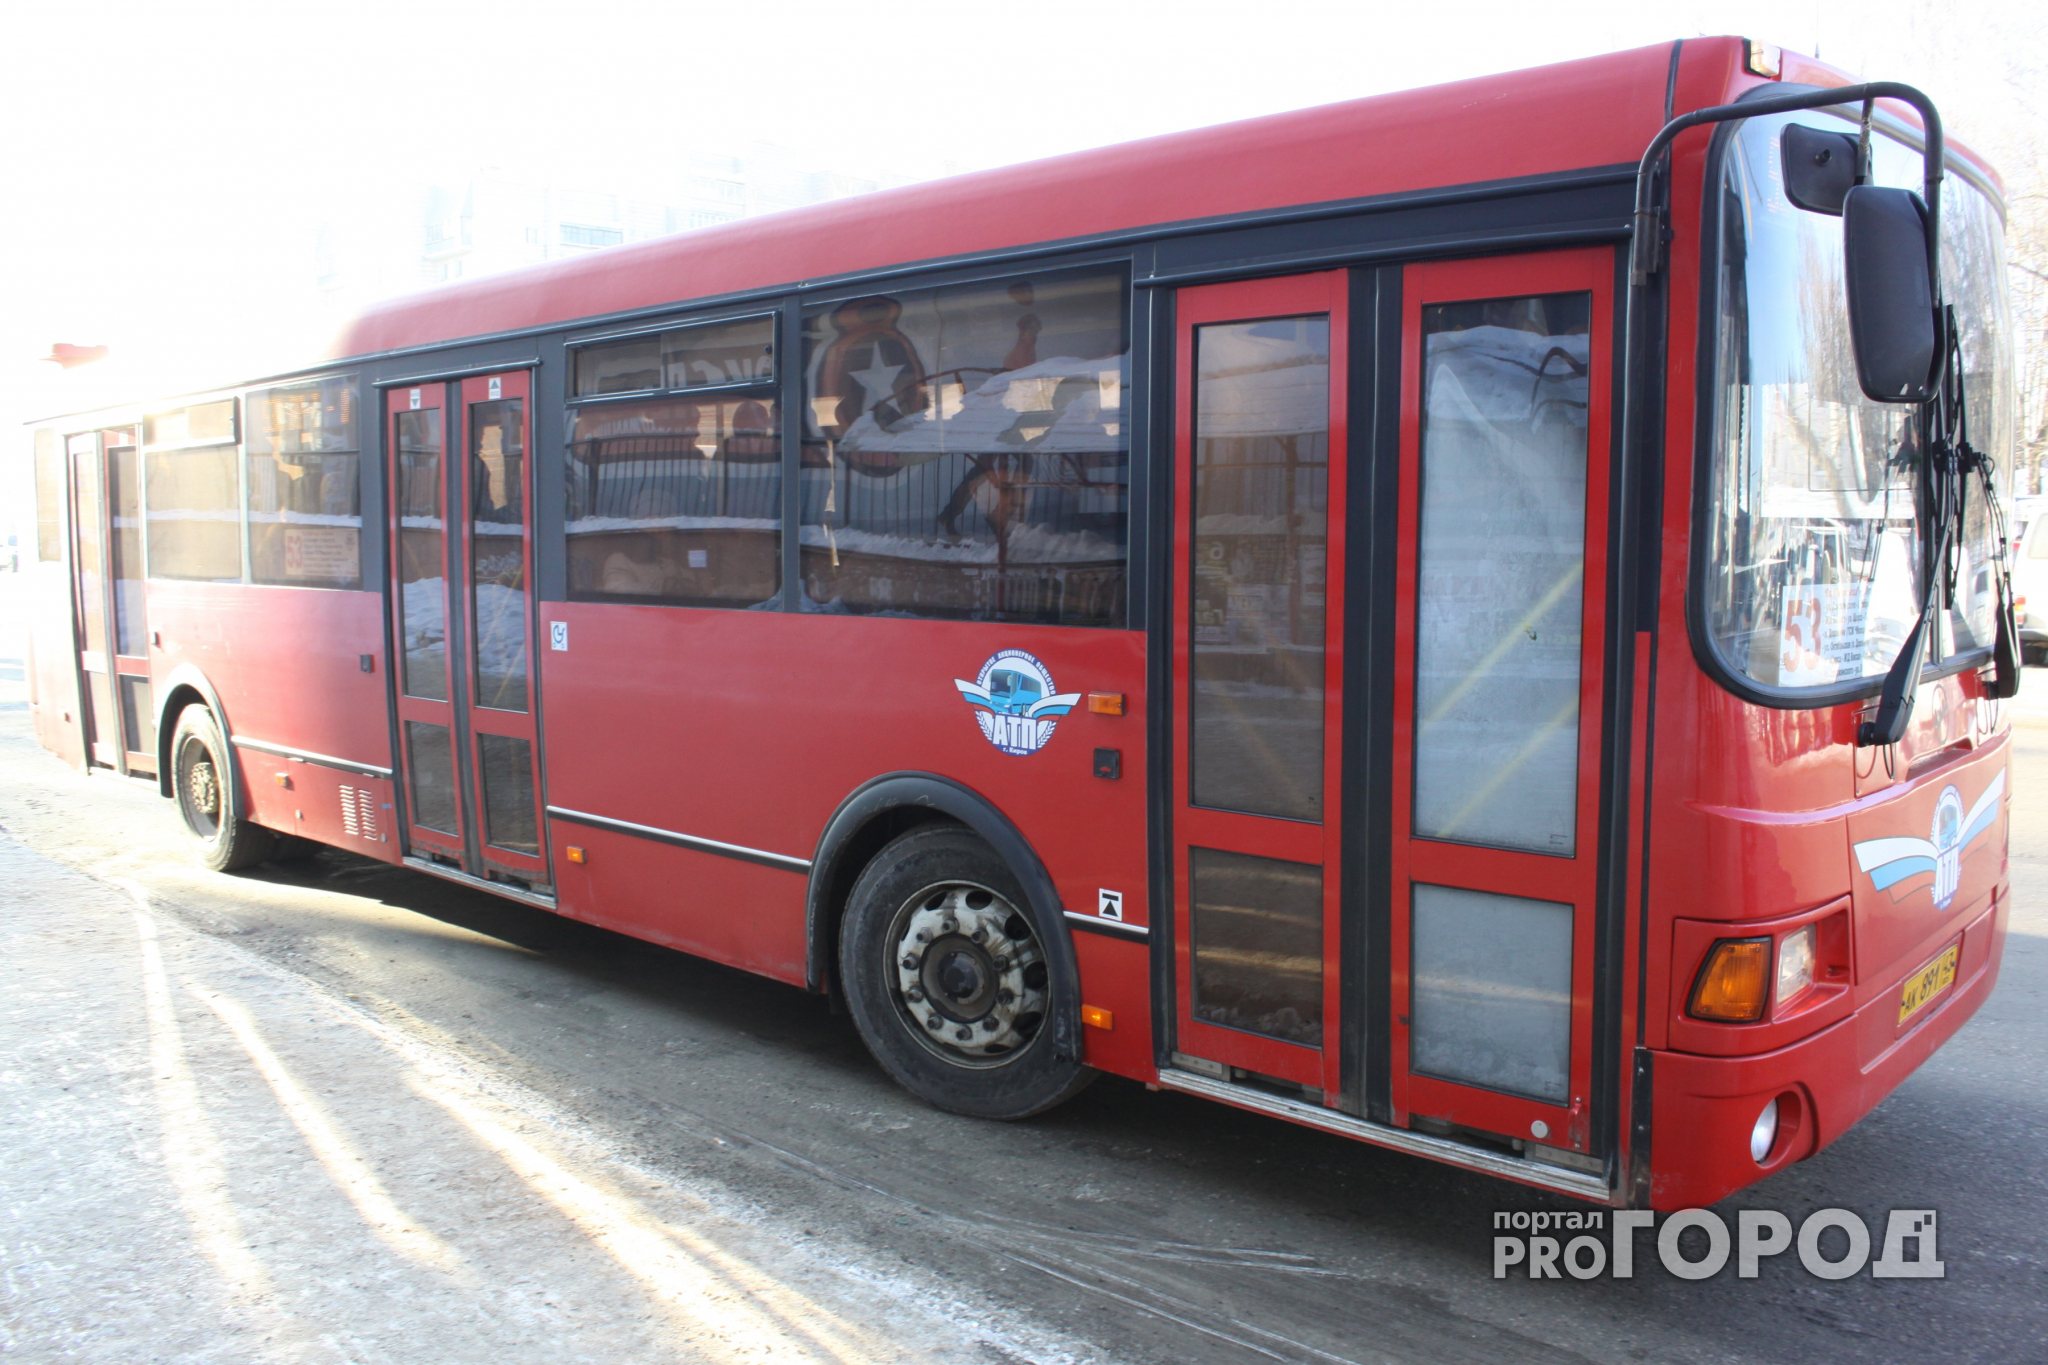 Каждый двадцатый пассажирский автобус в Кирове неисправен